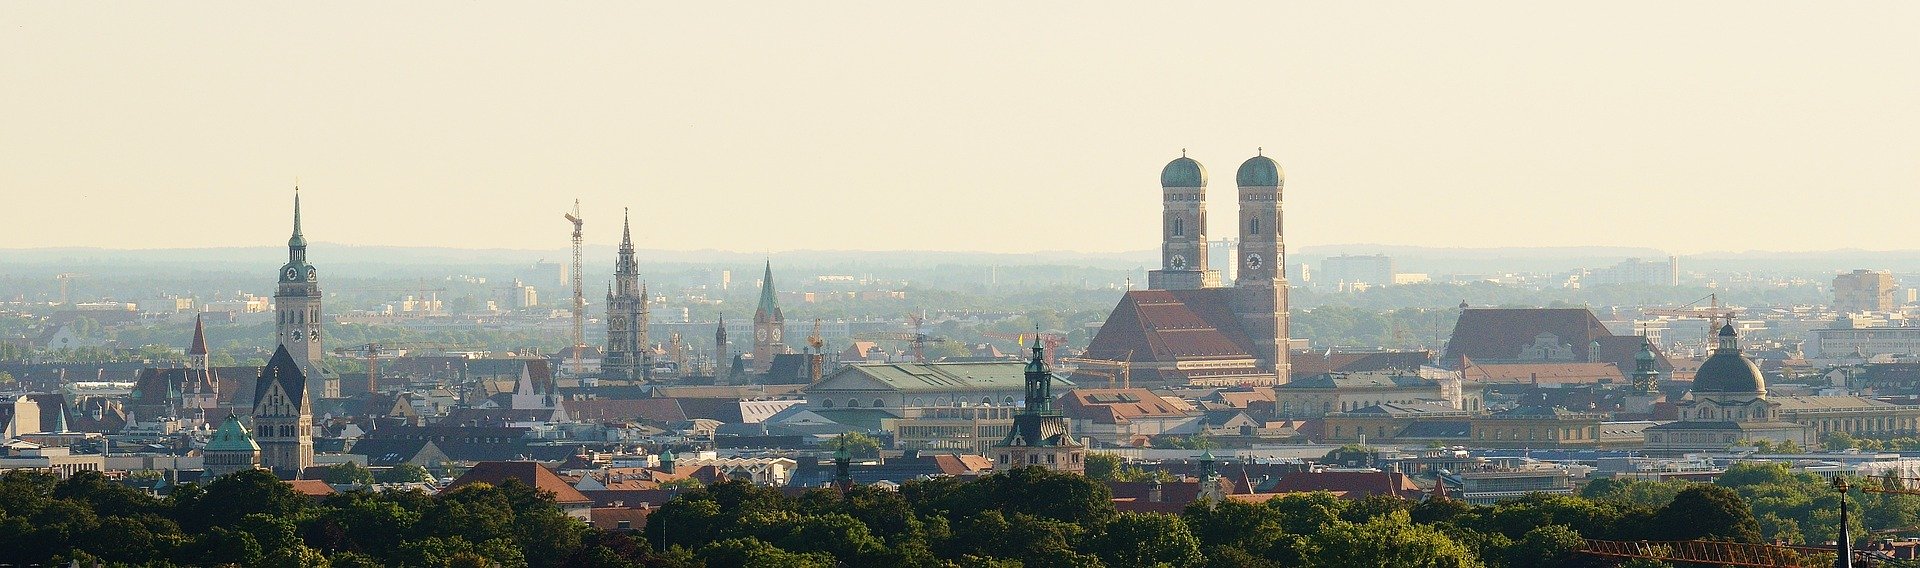 Panorama der Stadt München.